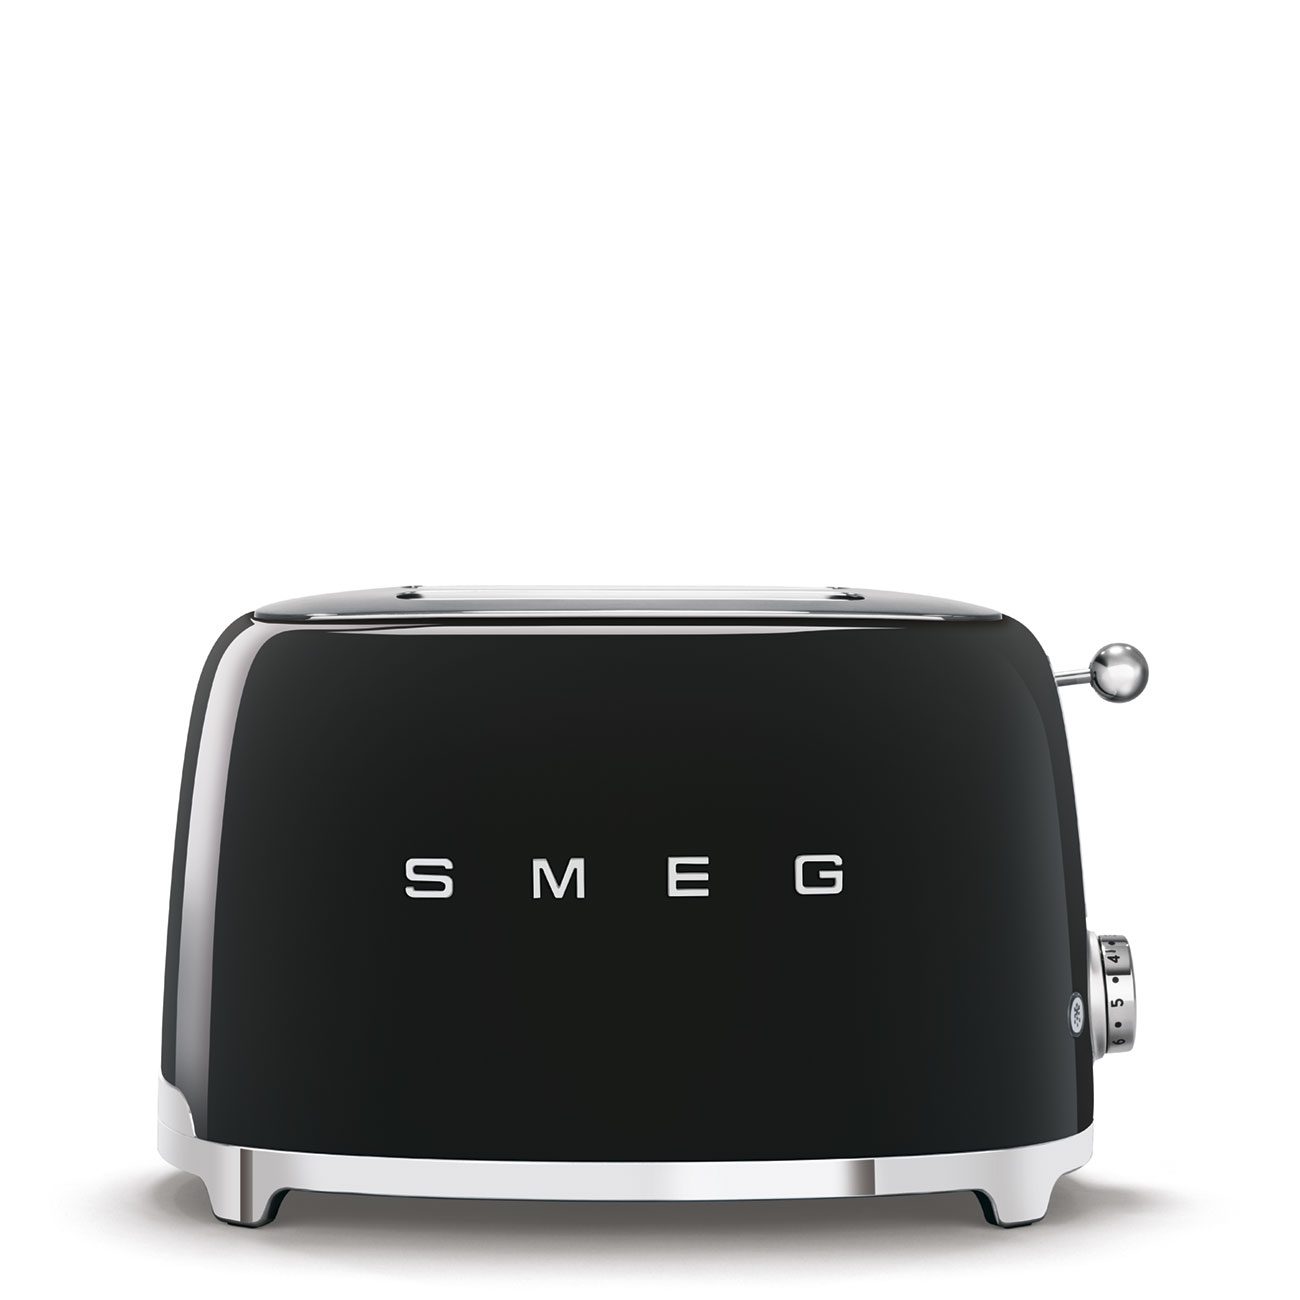 Toaster / Grille-pain "SMEG"